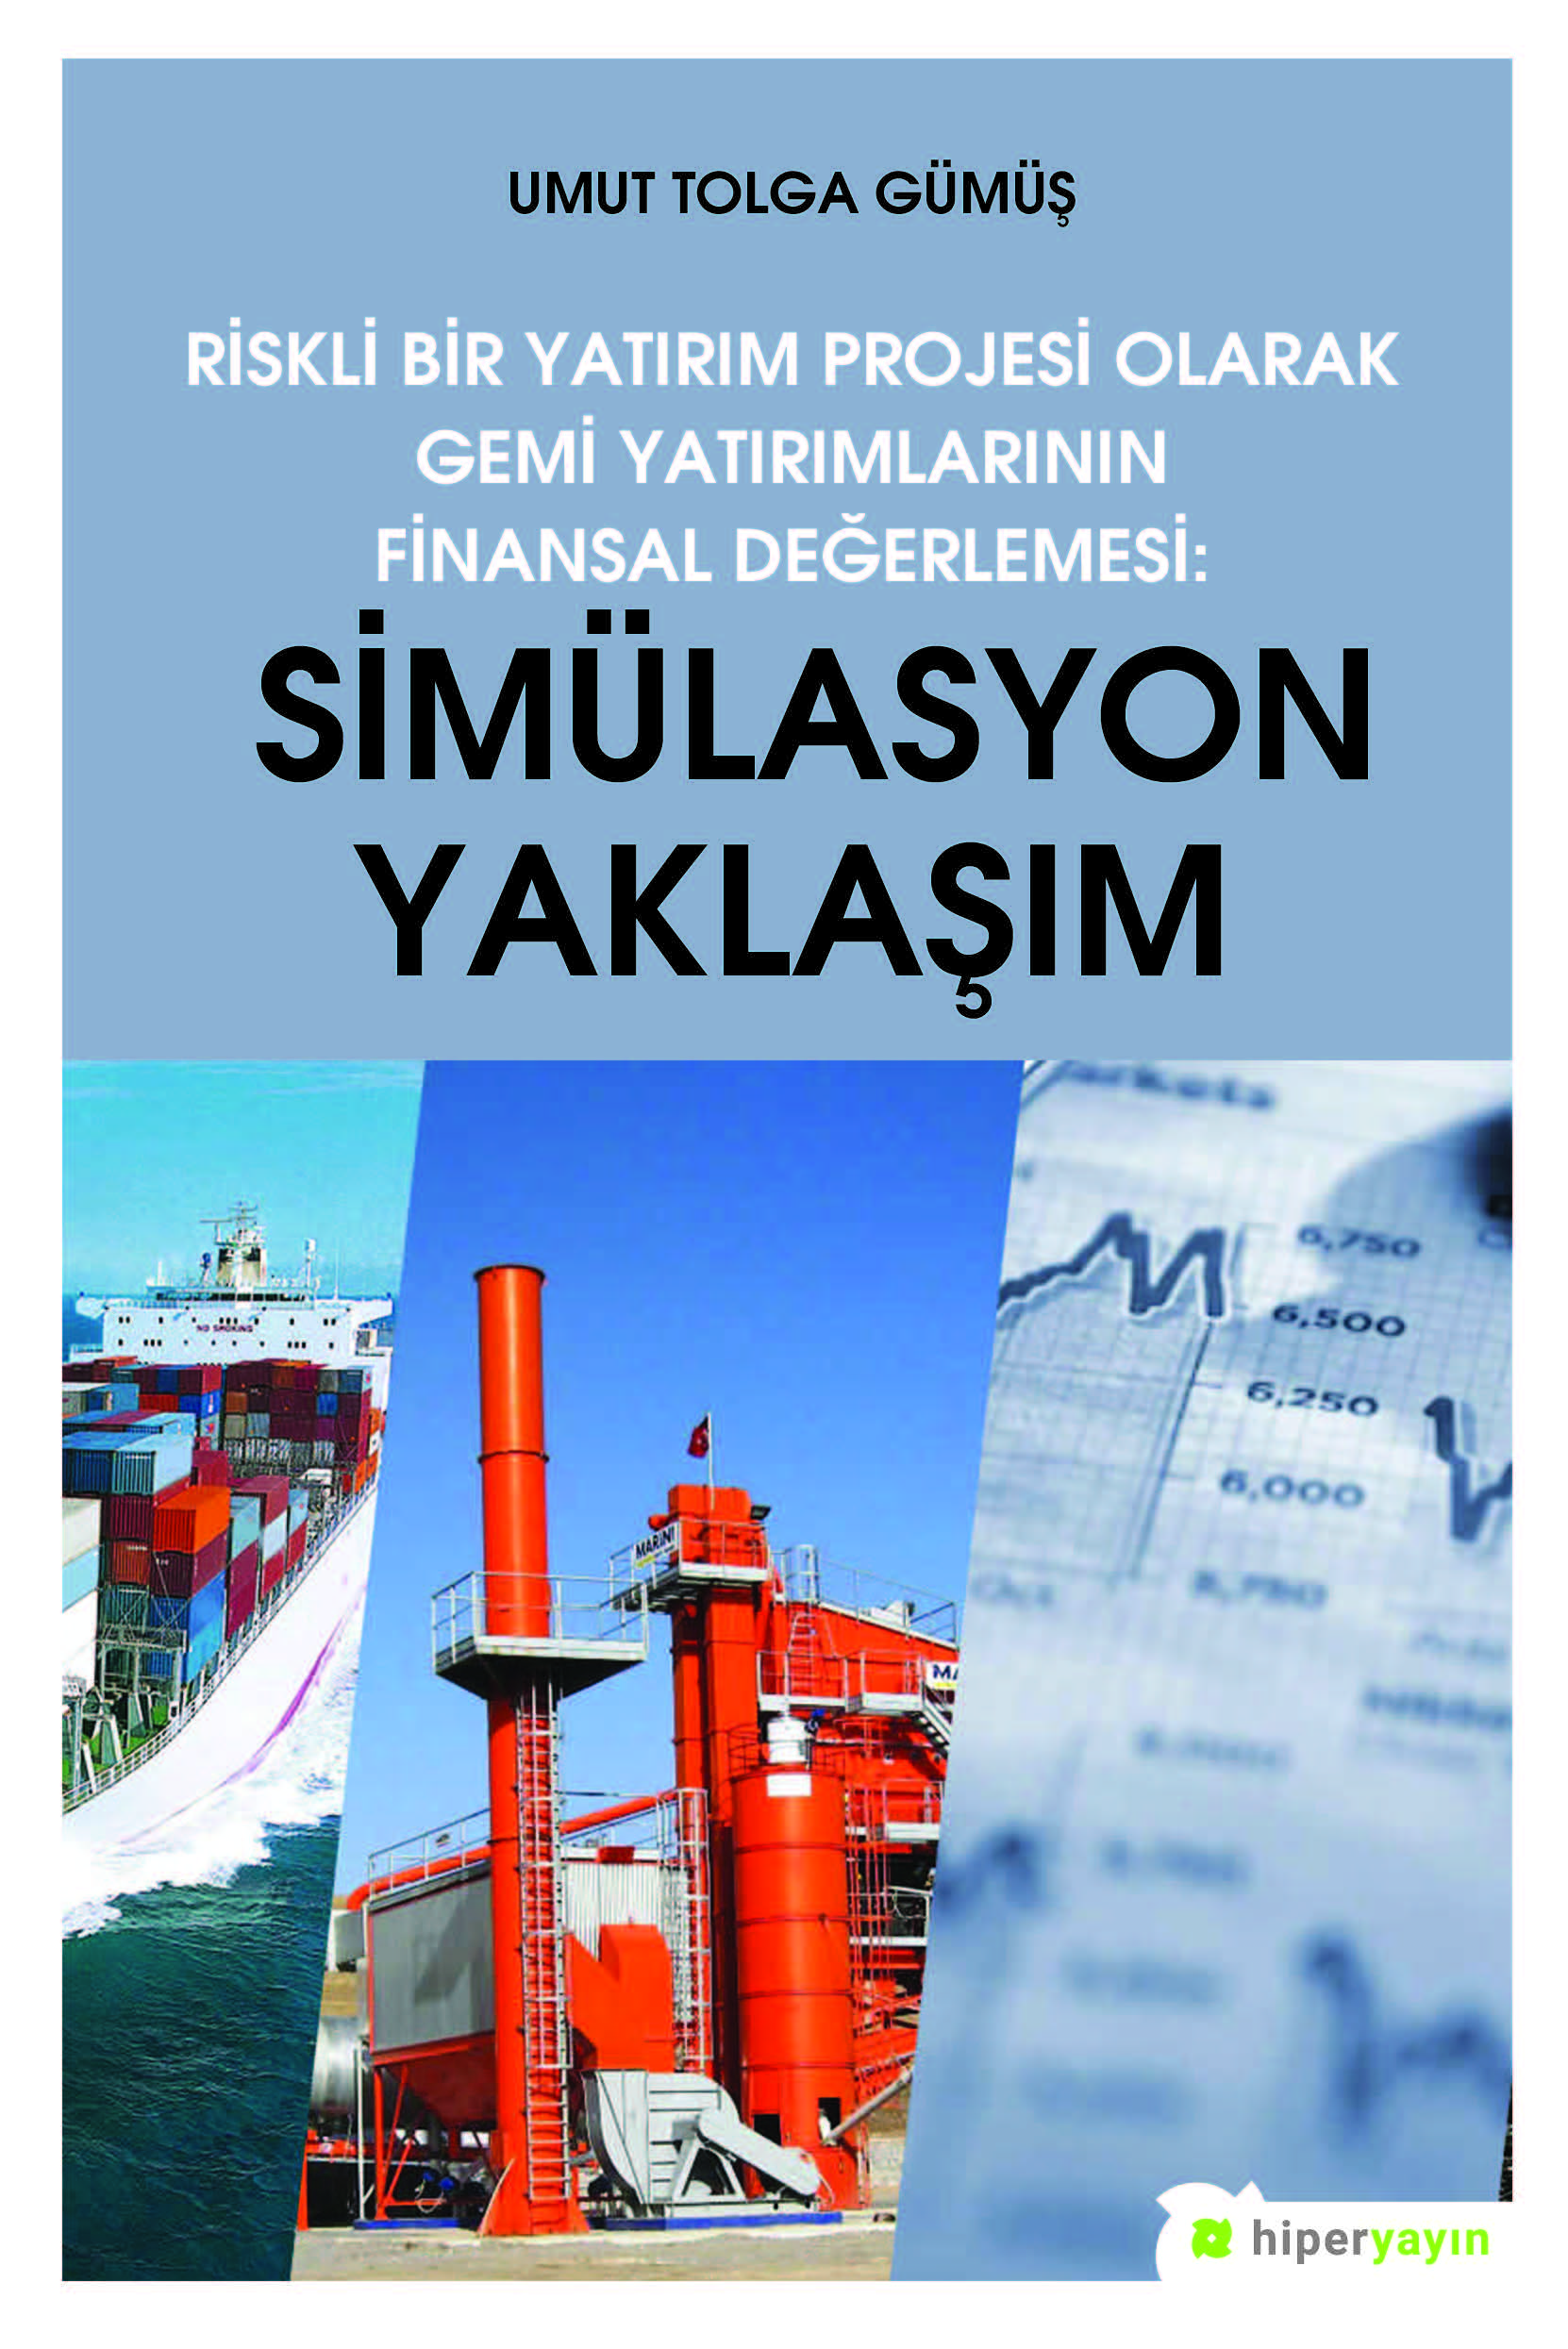 Riskli Bir Yatırım Projesi Olarak Gemi Yatırımlarının Finansal Değerlemesi: Simülasyon Yaklaşımı